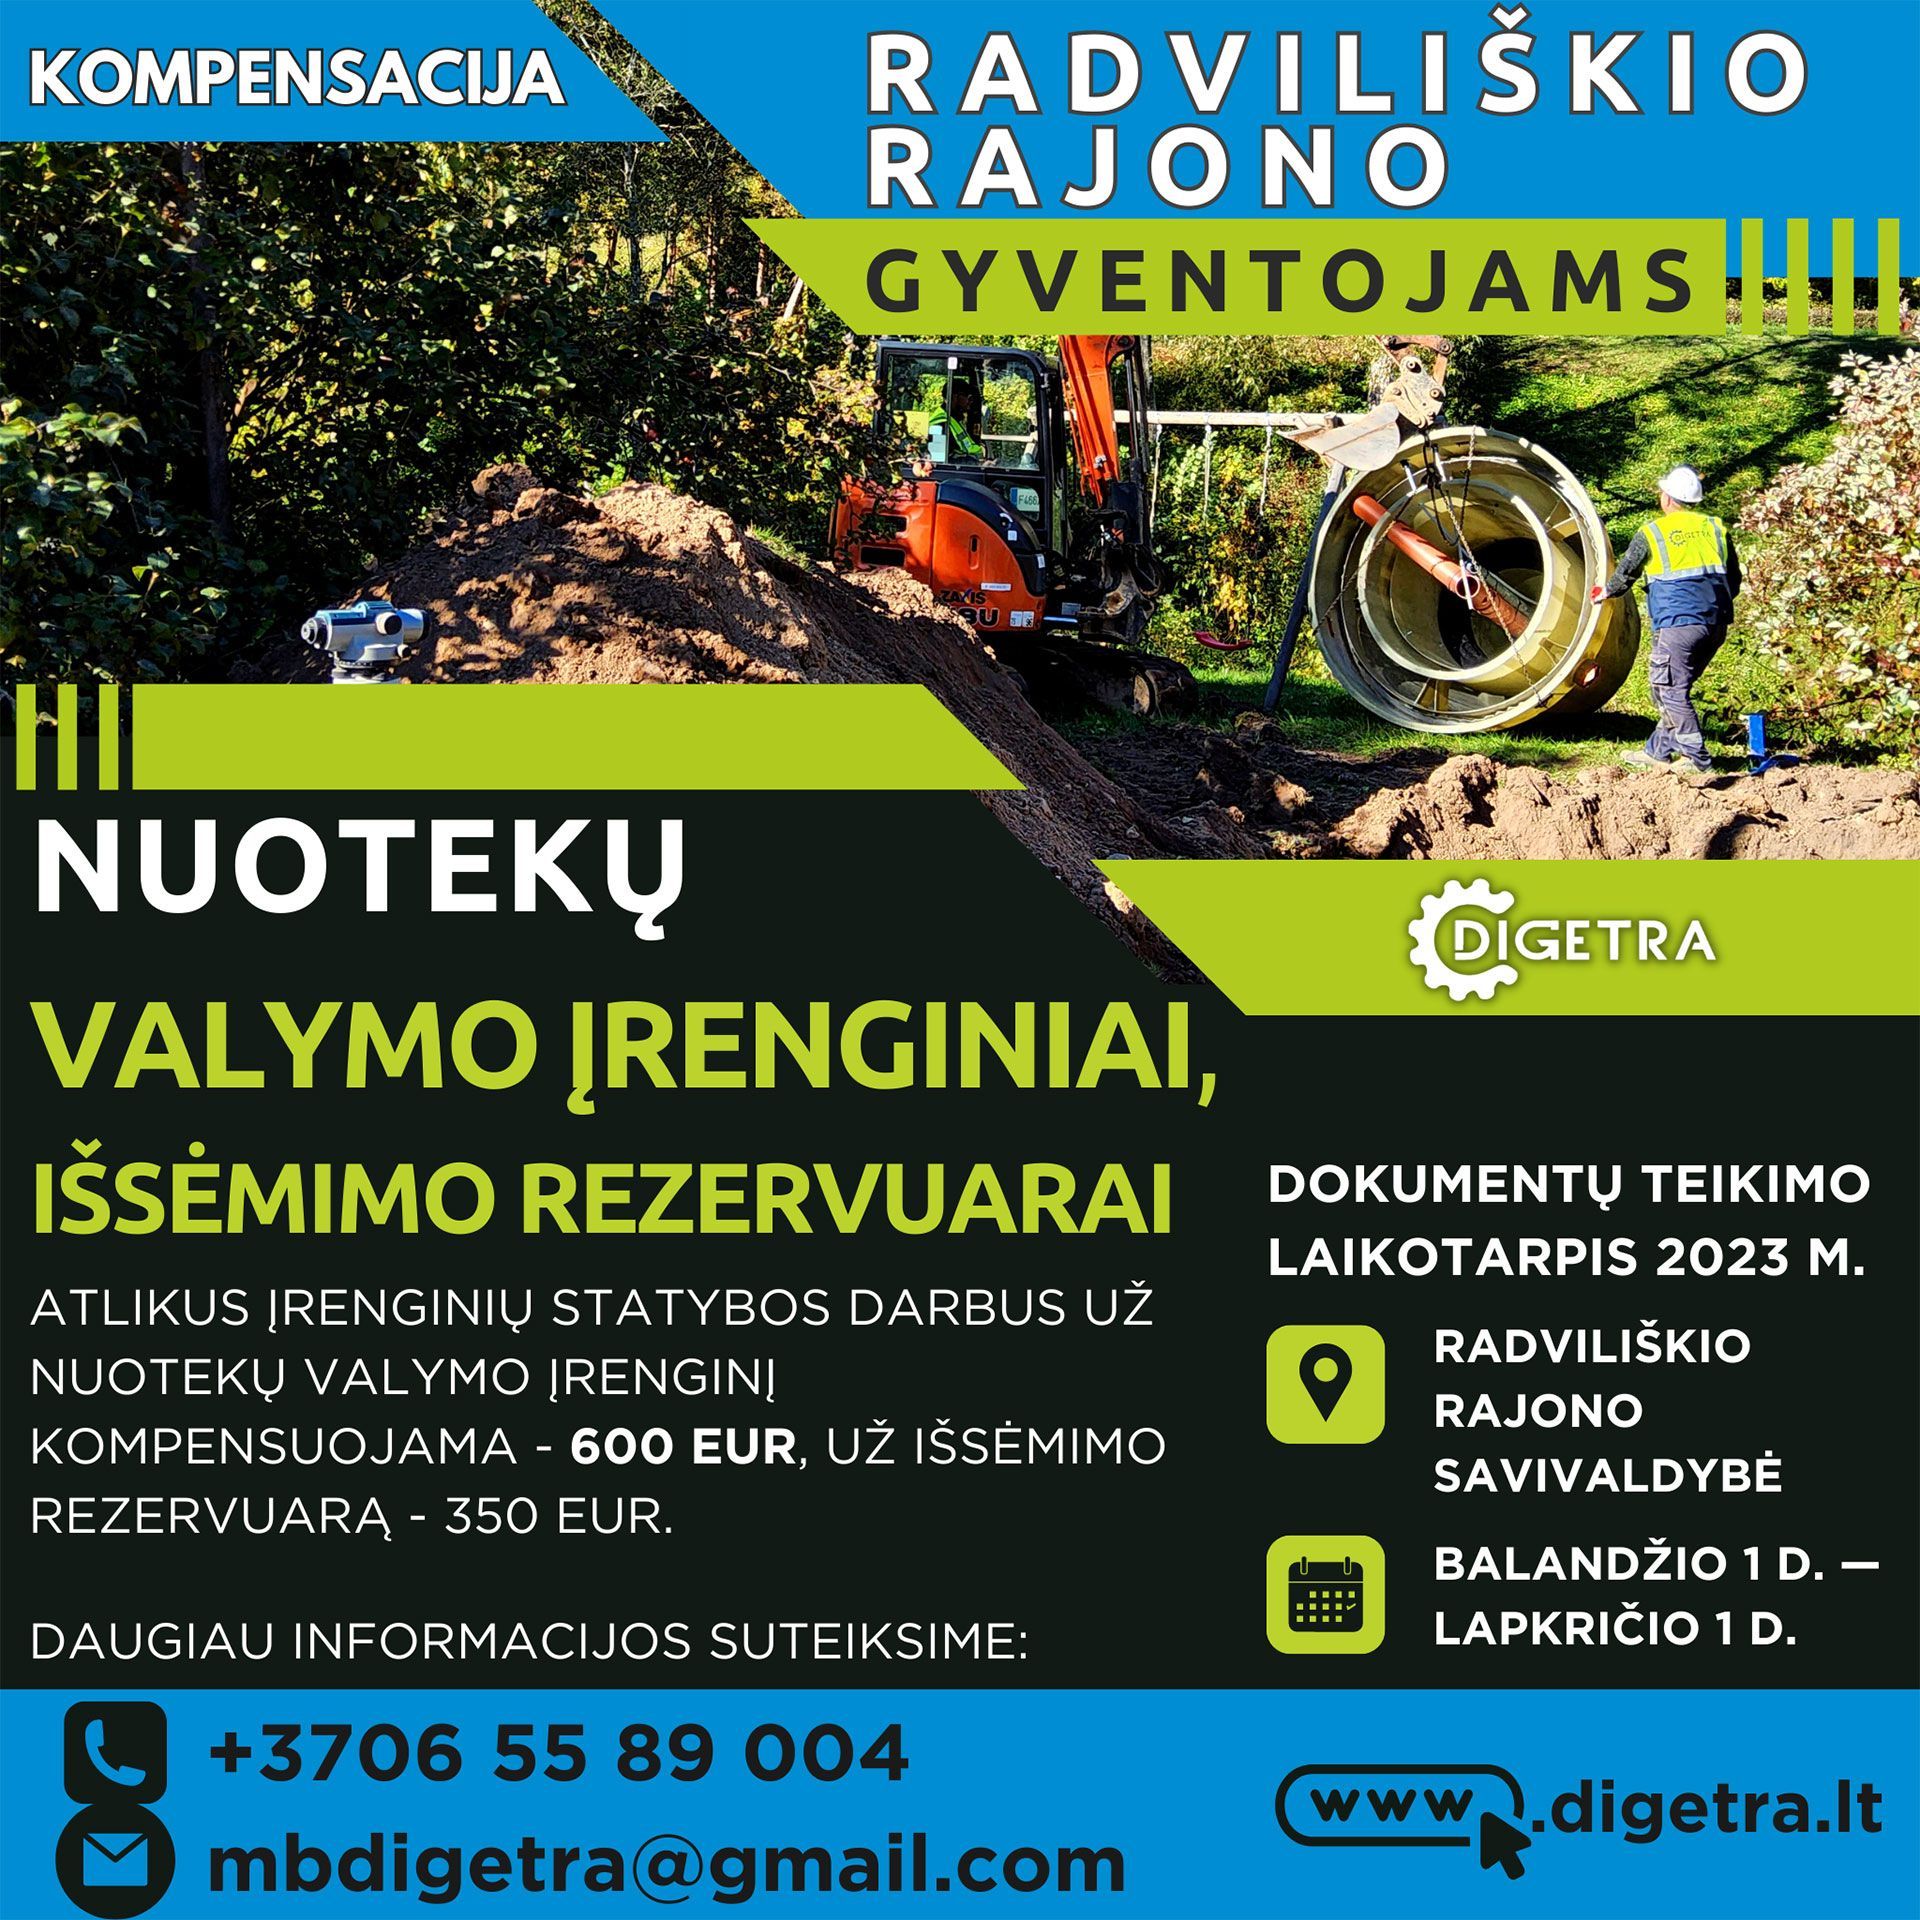 Primename, kad Radviliškio rajono gyventojams 2023 m. teikti paraiškas galima nuo balandžio 1-osios iki lapkričio 1 d.